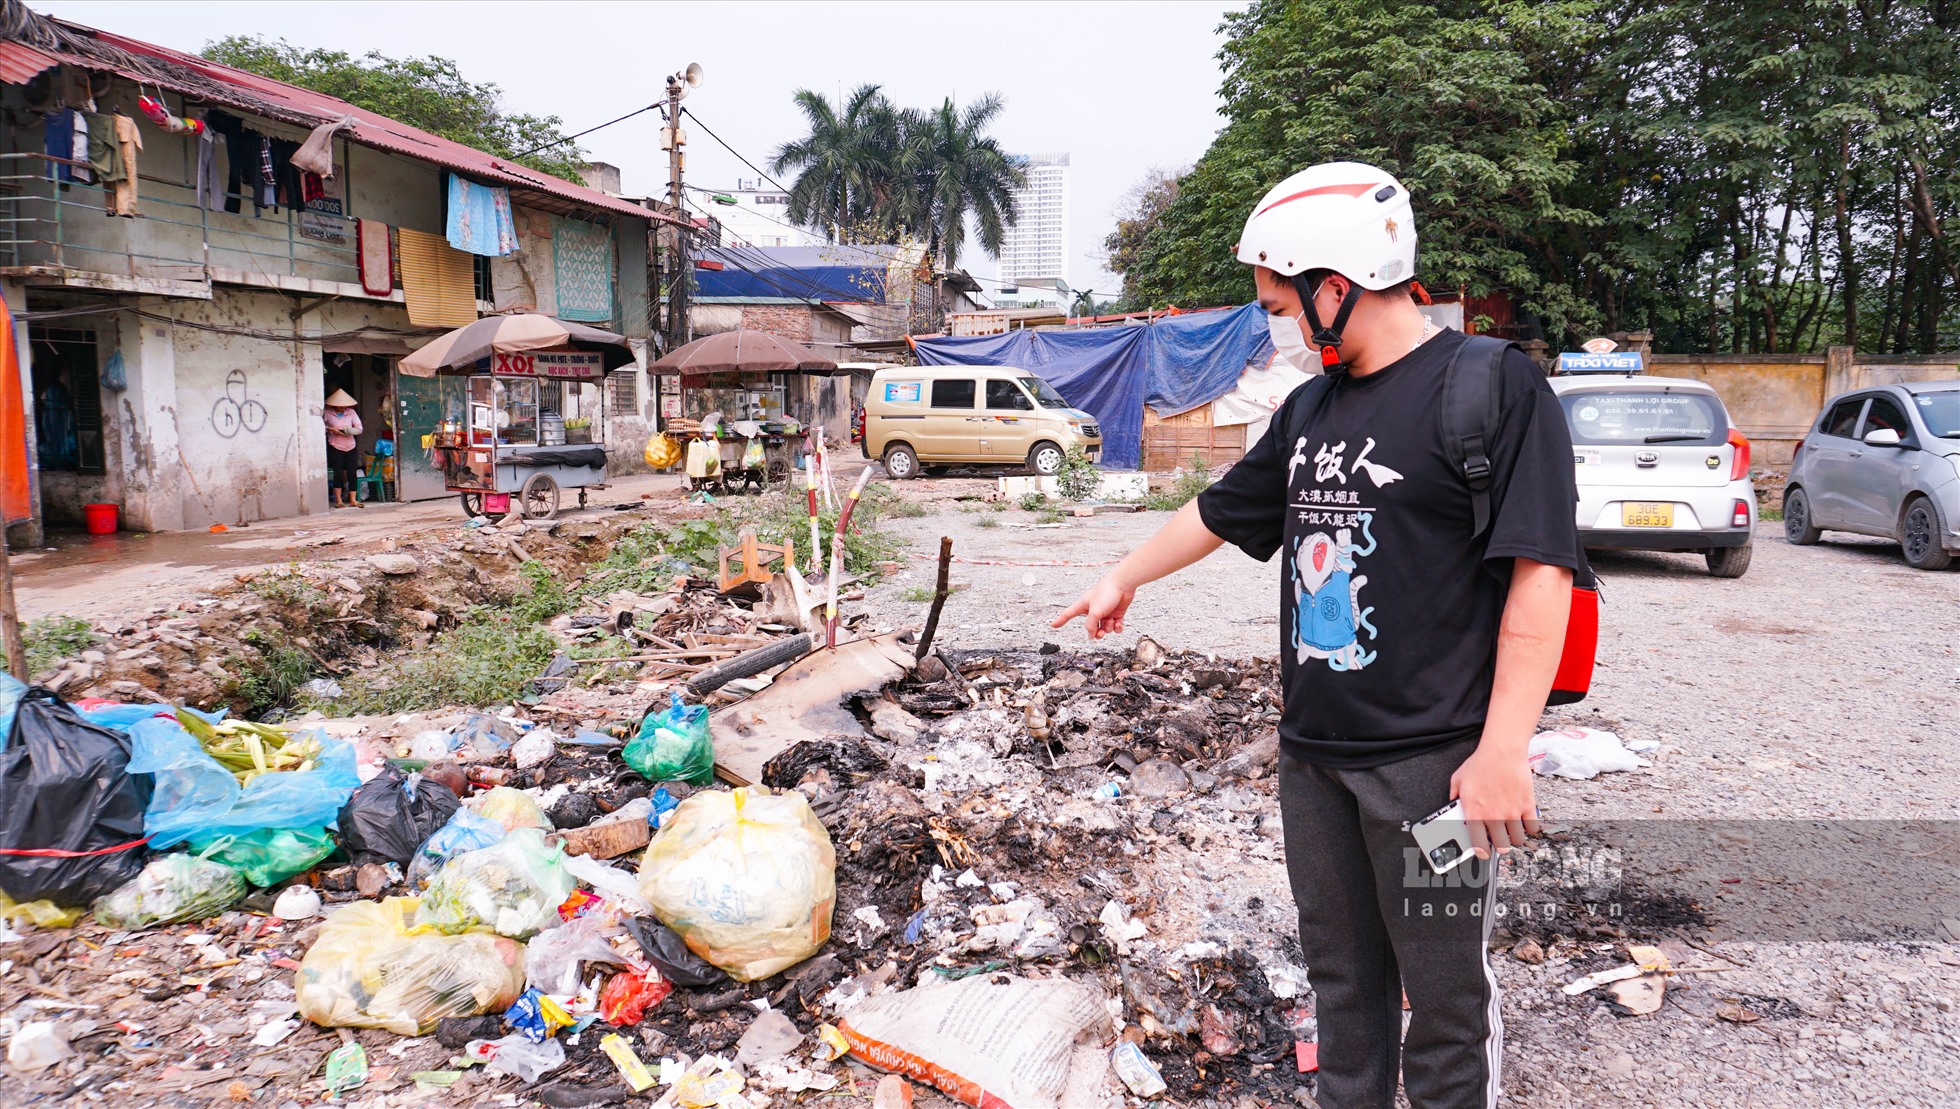 Bạn Mai Văn Toàn (quận Tây Hồ, Hà Nội) cho biết: ” Mỗi ngày đi làm về qua đây mình đều phải đi qua khu vực bãi rác này. Có những hôm người dân tự ý đốt rác đốt tạo thành những cột khói đen với mùi khó chịu khiến mình cảm thấy vô cùng khó chịu“.